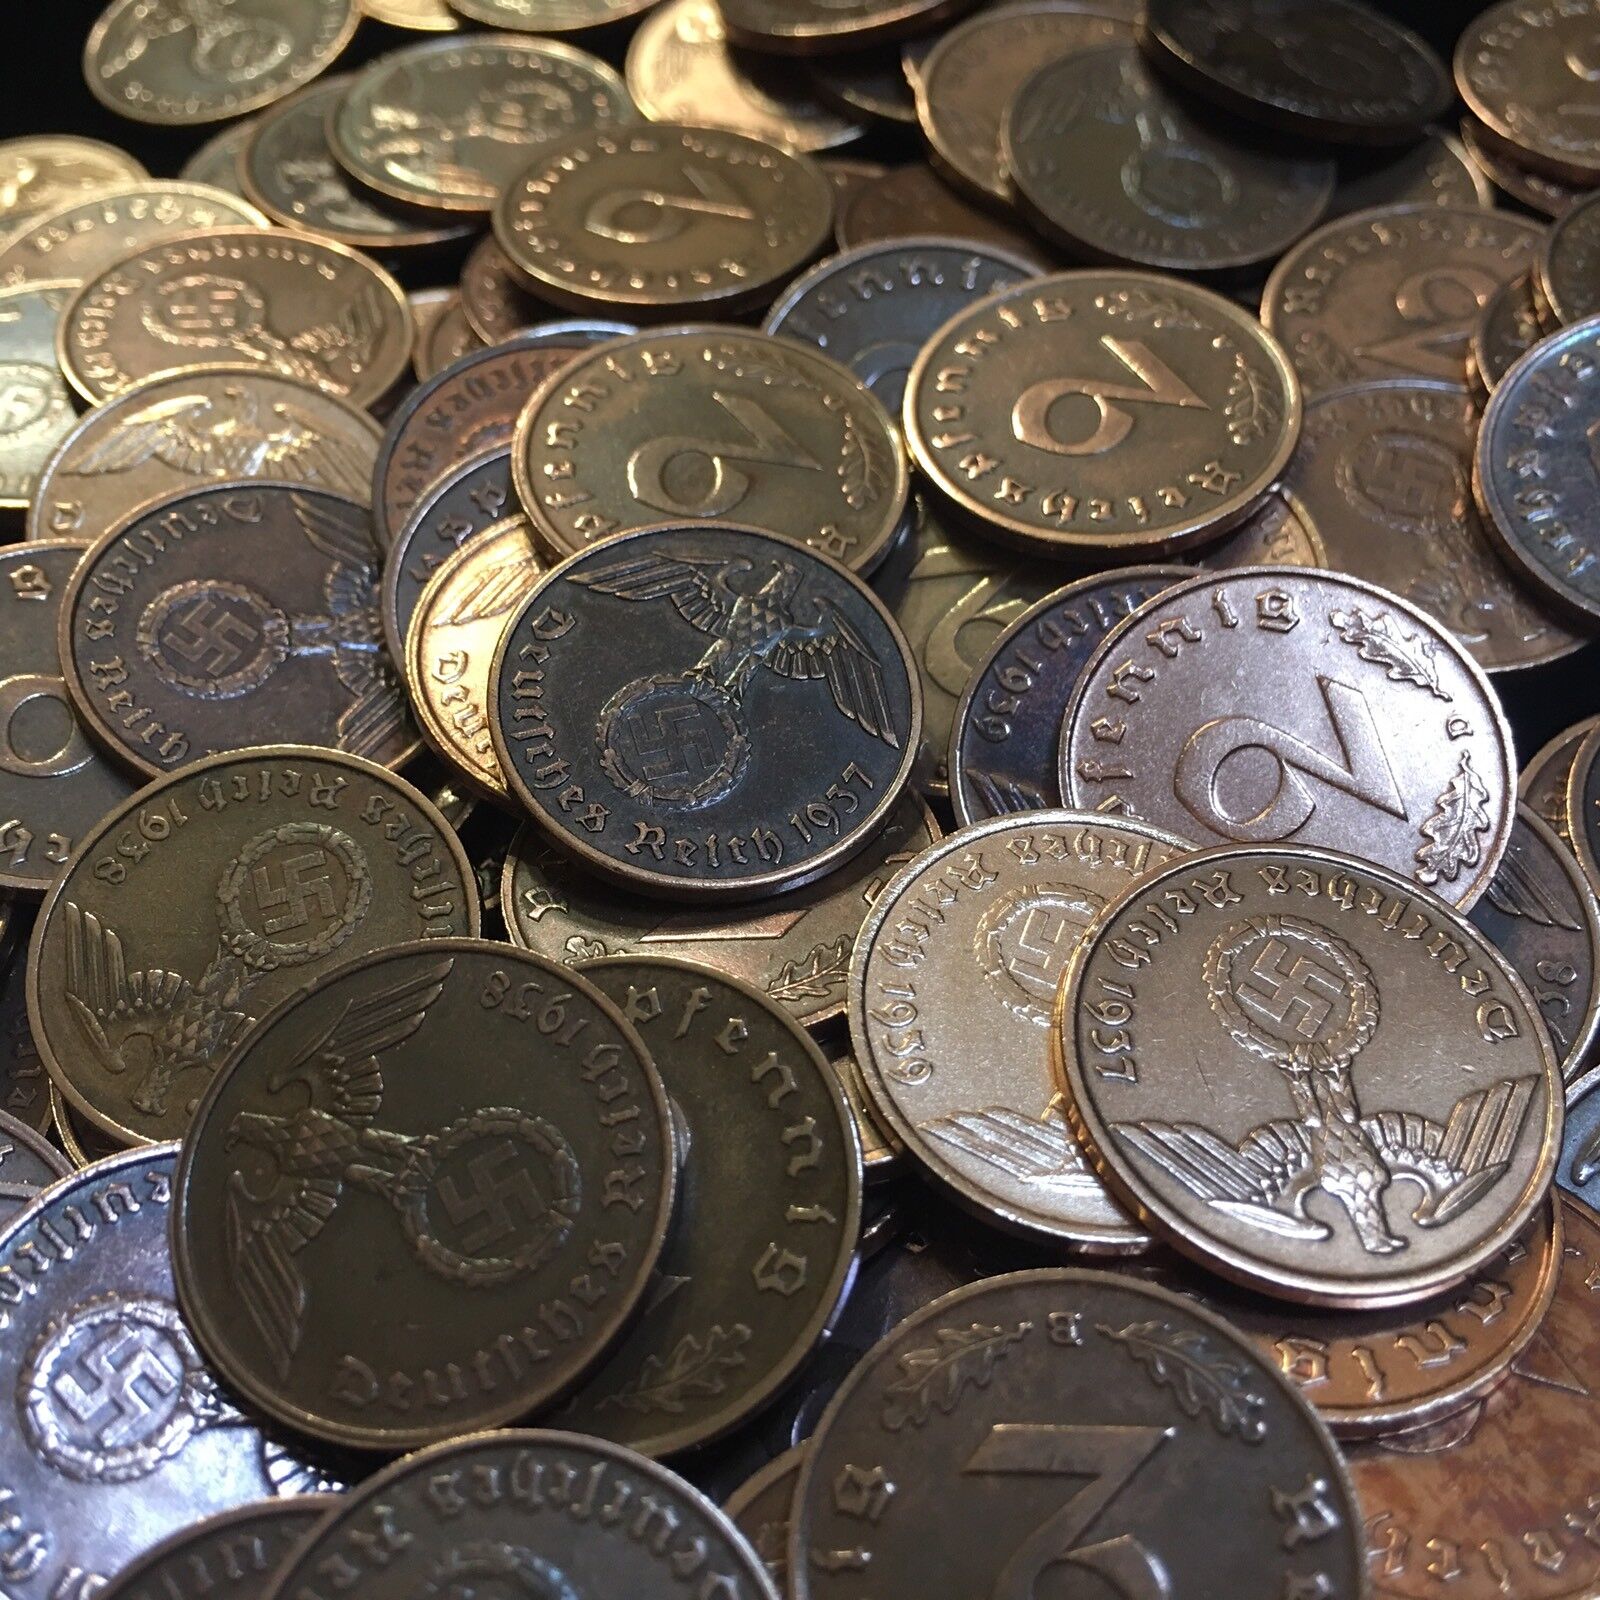 Rare WW2 German 2 RP Reichspfennig 3rd Reich Bronze Nazi Coin Buy 3 Get 1 Free Без бренда - фотография #6